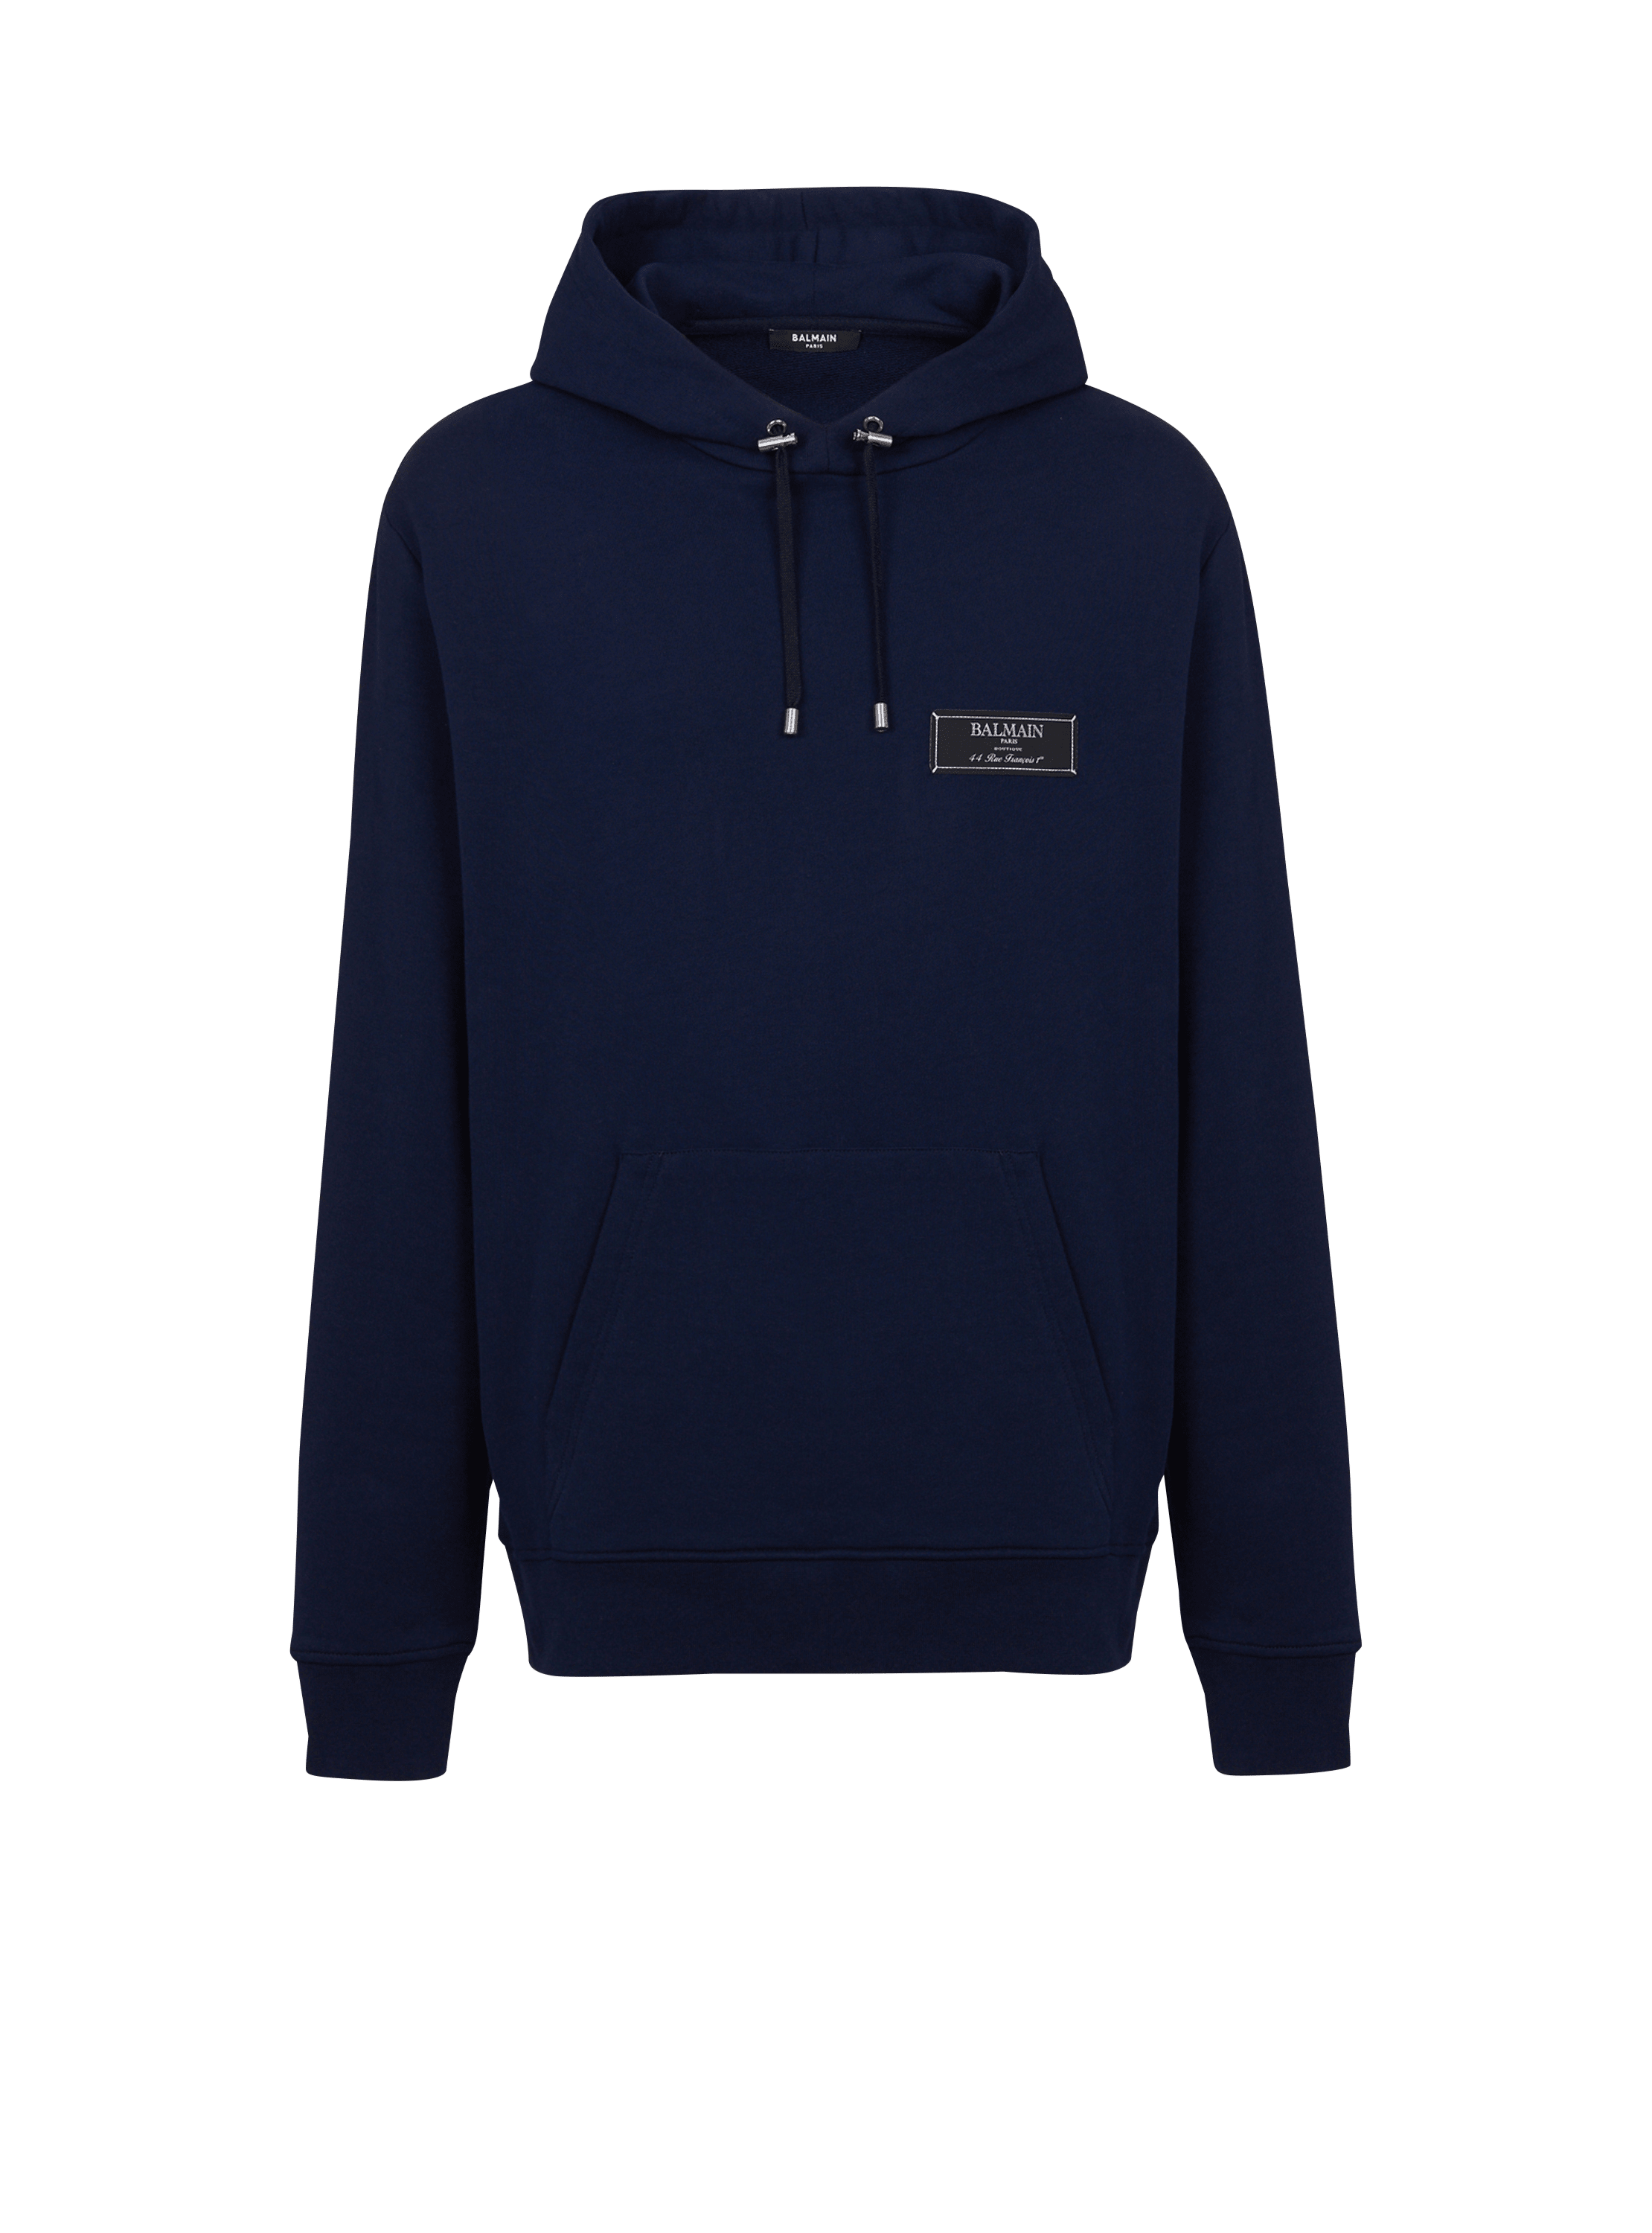 Pierre Balmain hoodie